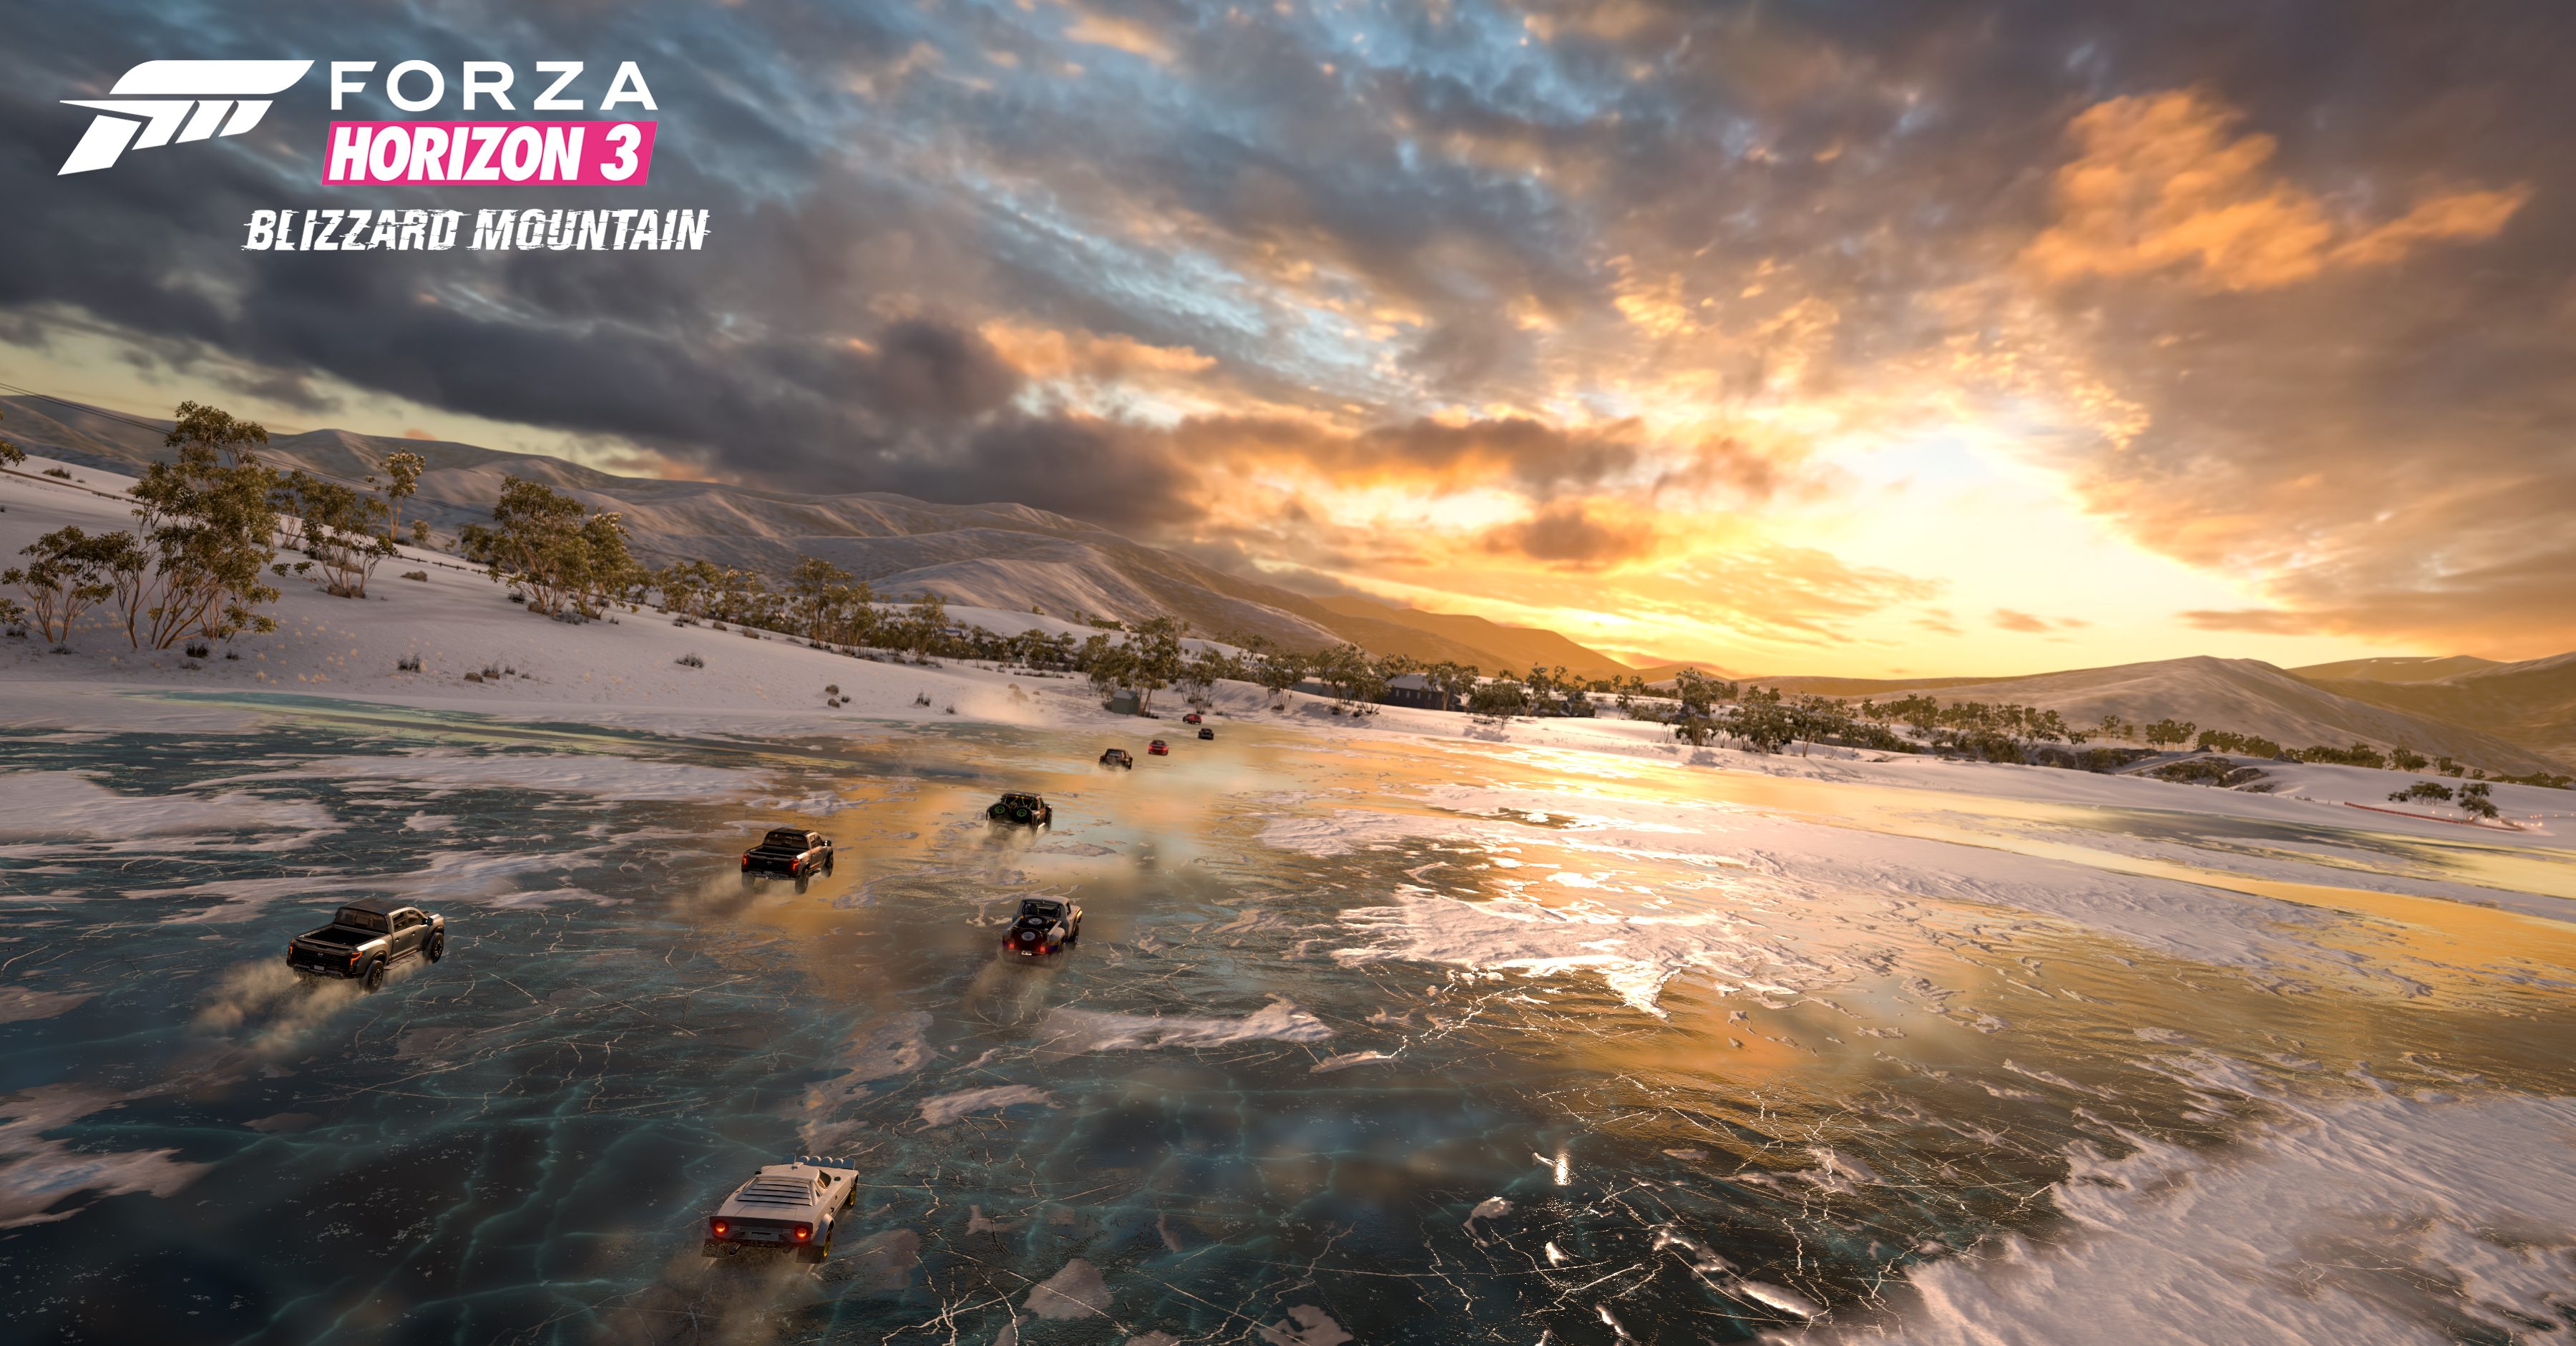 Forza Horizon 3’s Blizzard Mountain is here!